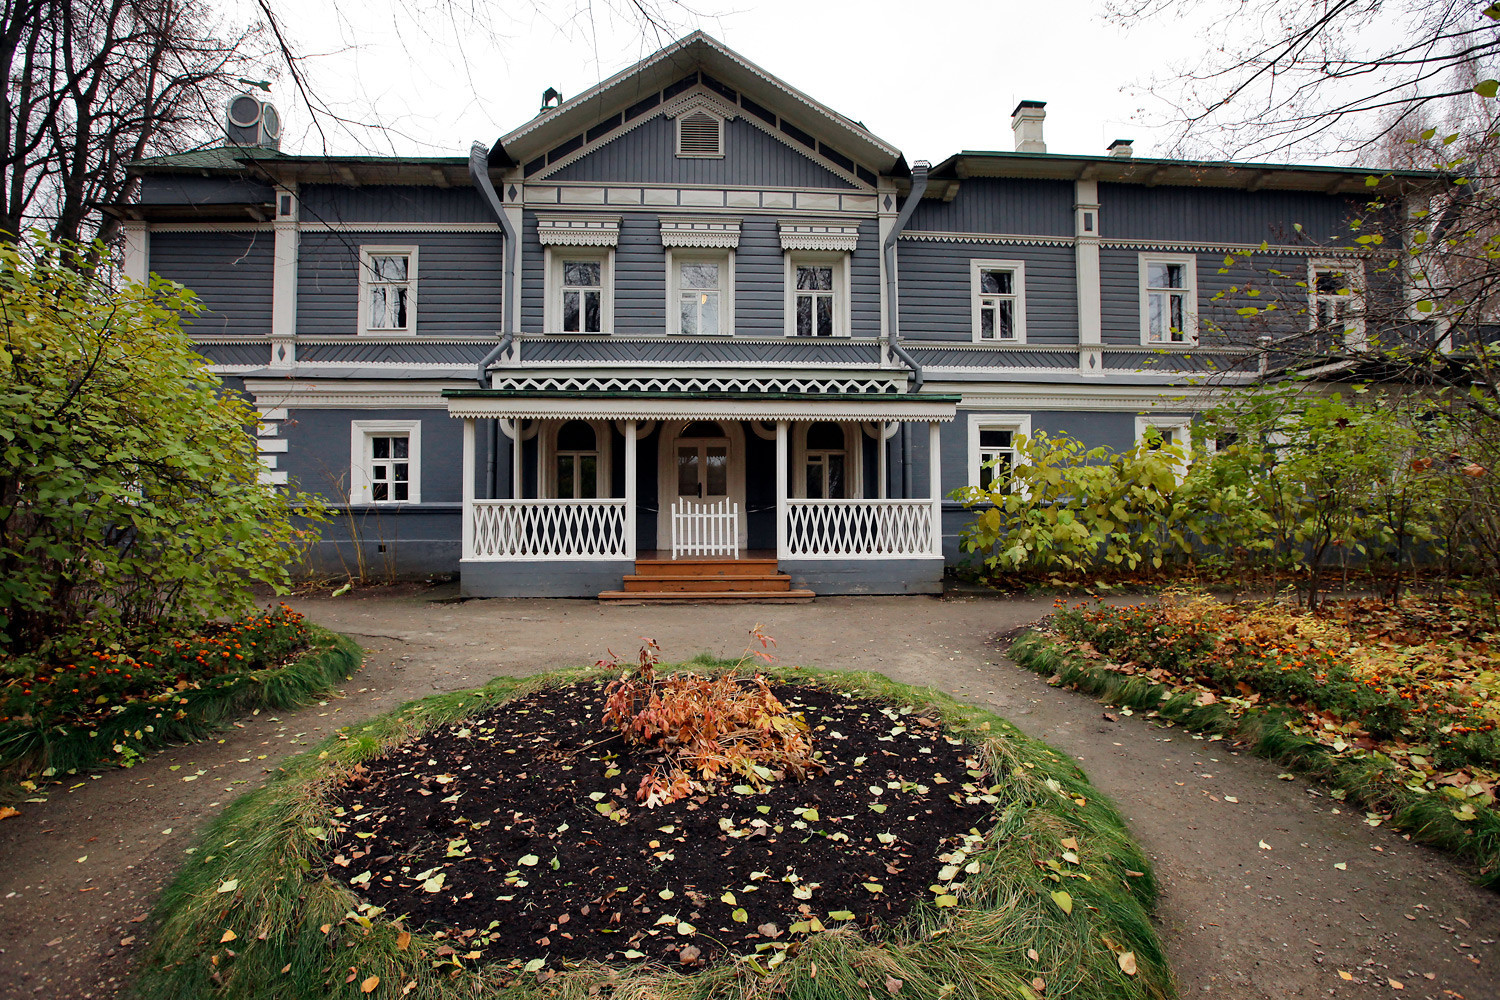 Casa-museu do compositor Piotr Tchaikovsky.